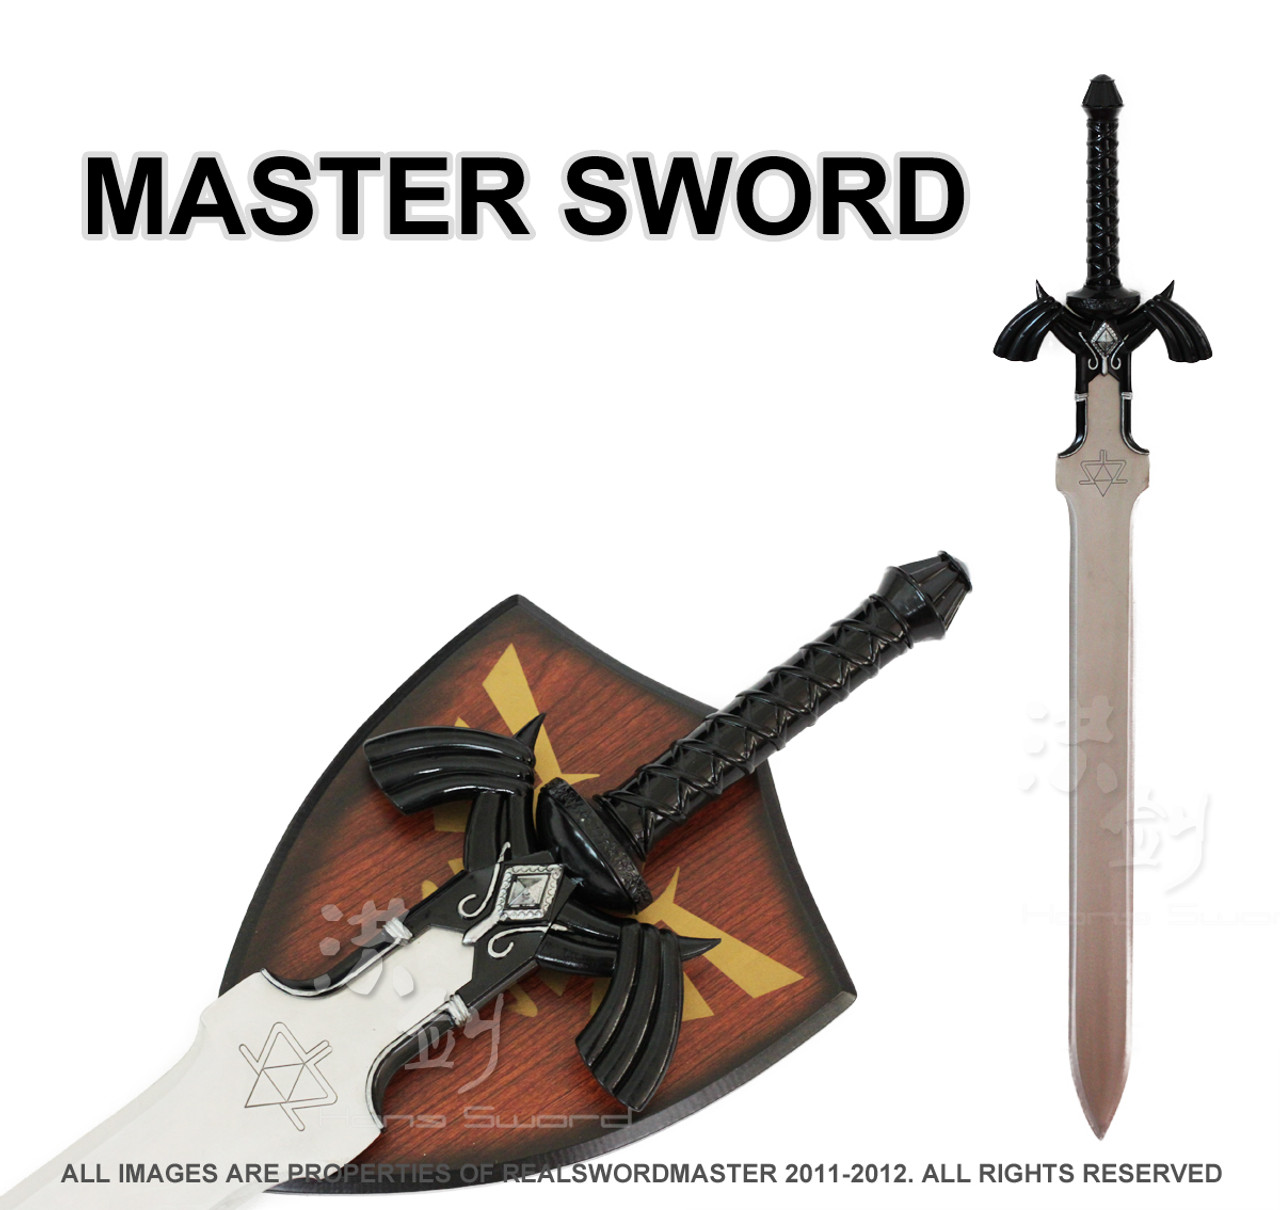 Dark Link's Master Sword from the Legend of Zelda